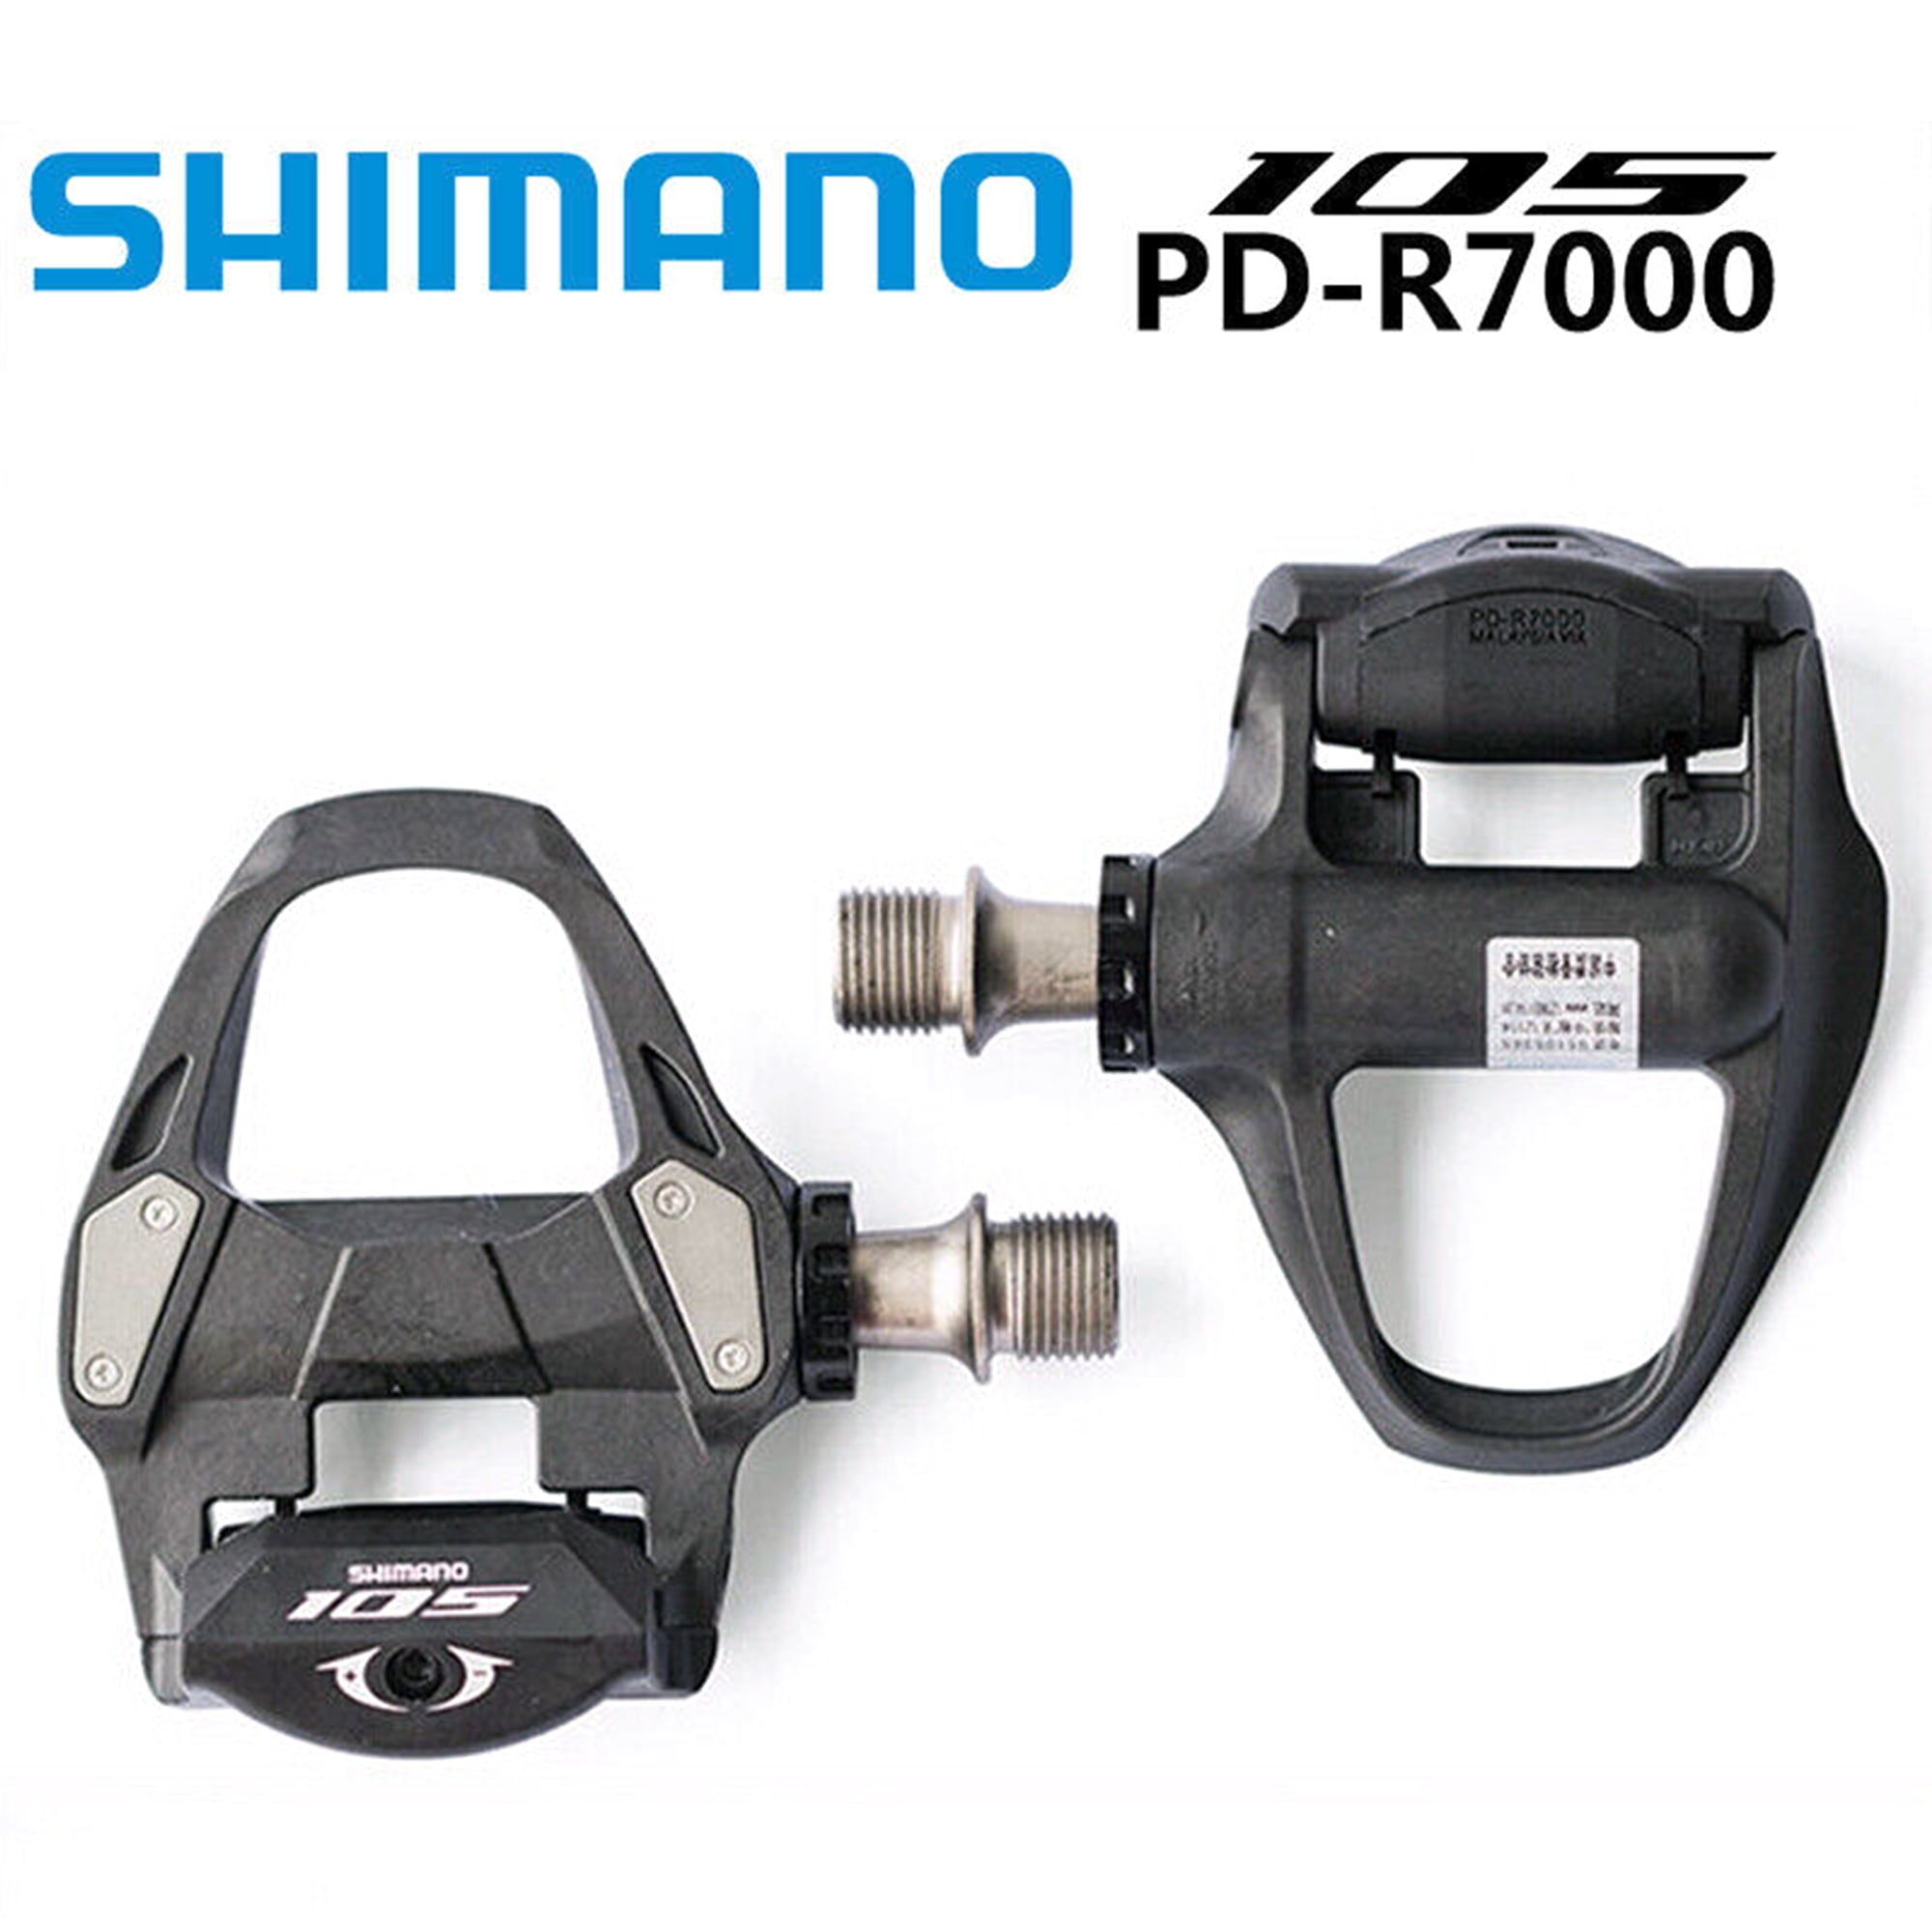 Wieg niettemin Voortdurende Shimano SPD-SL Pedals PD R8000/R7000/5800/R540/R550 Road Bike Pedal  Ultralight Carbon Self-lock Pedal with SH11 Cleat - Walmart.com